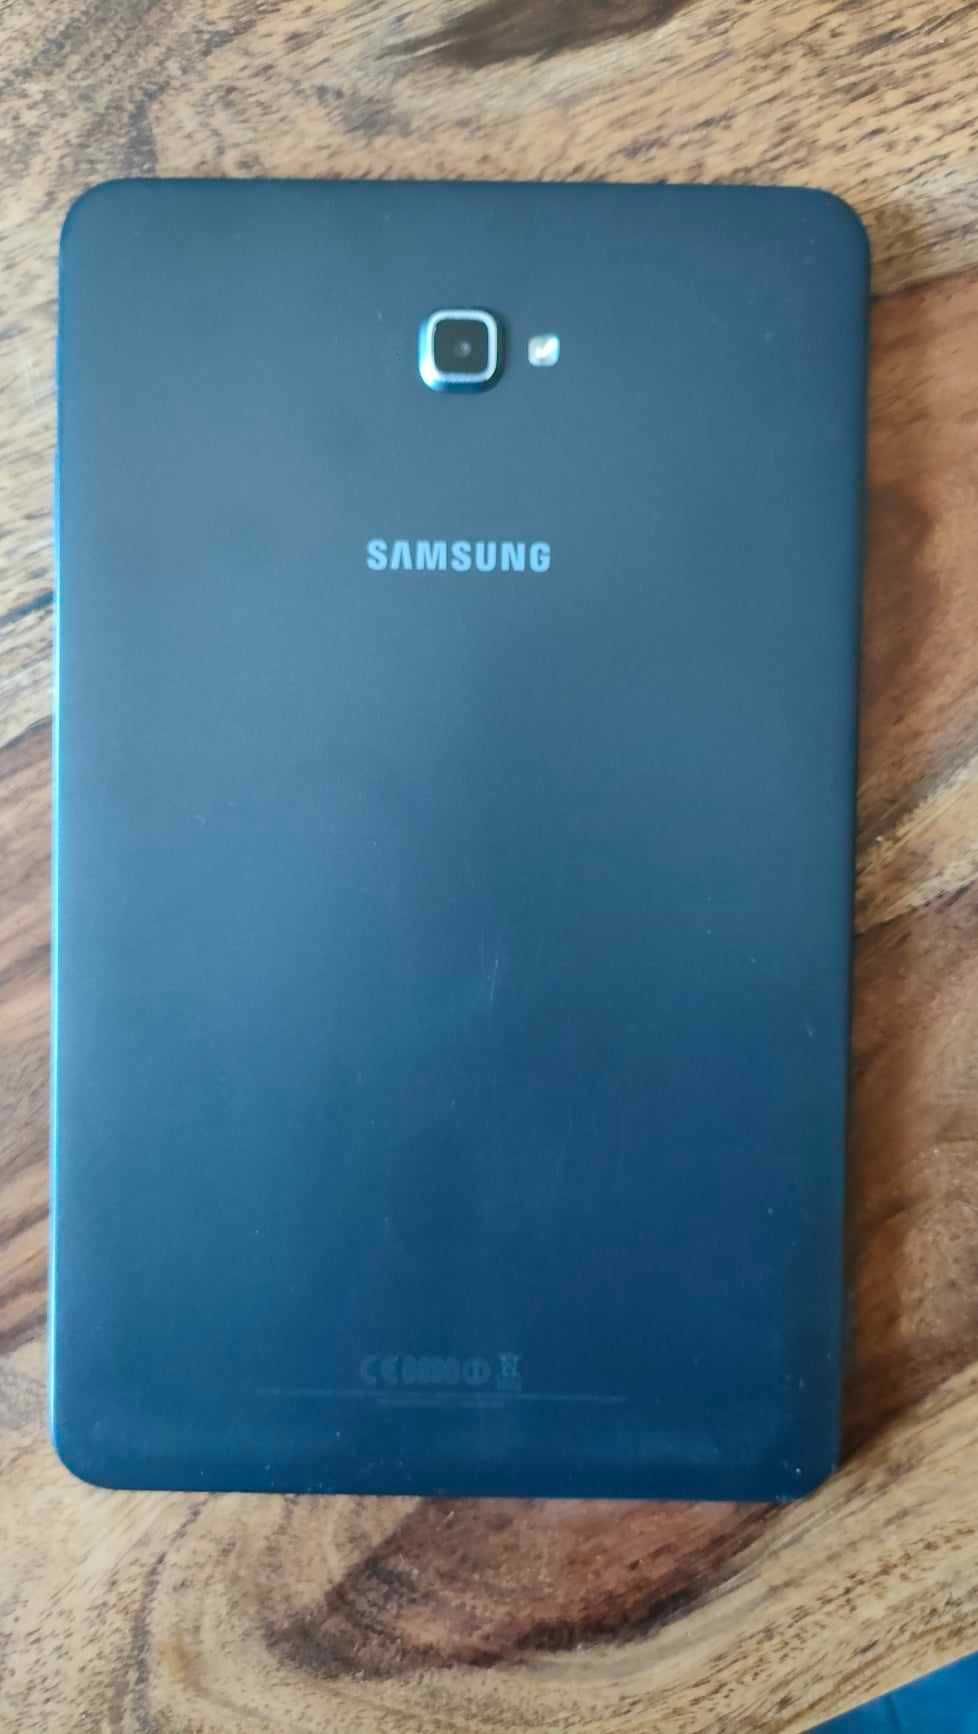 Samsung Galaxy Tab A 10.1 2016 SM-T585 LTE